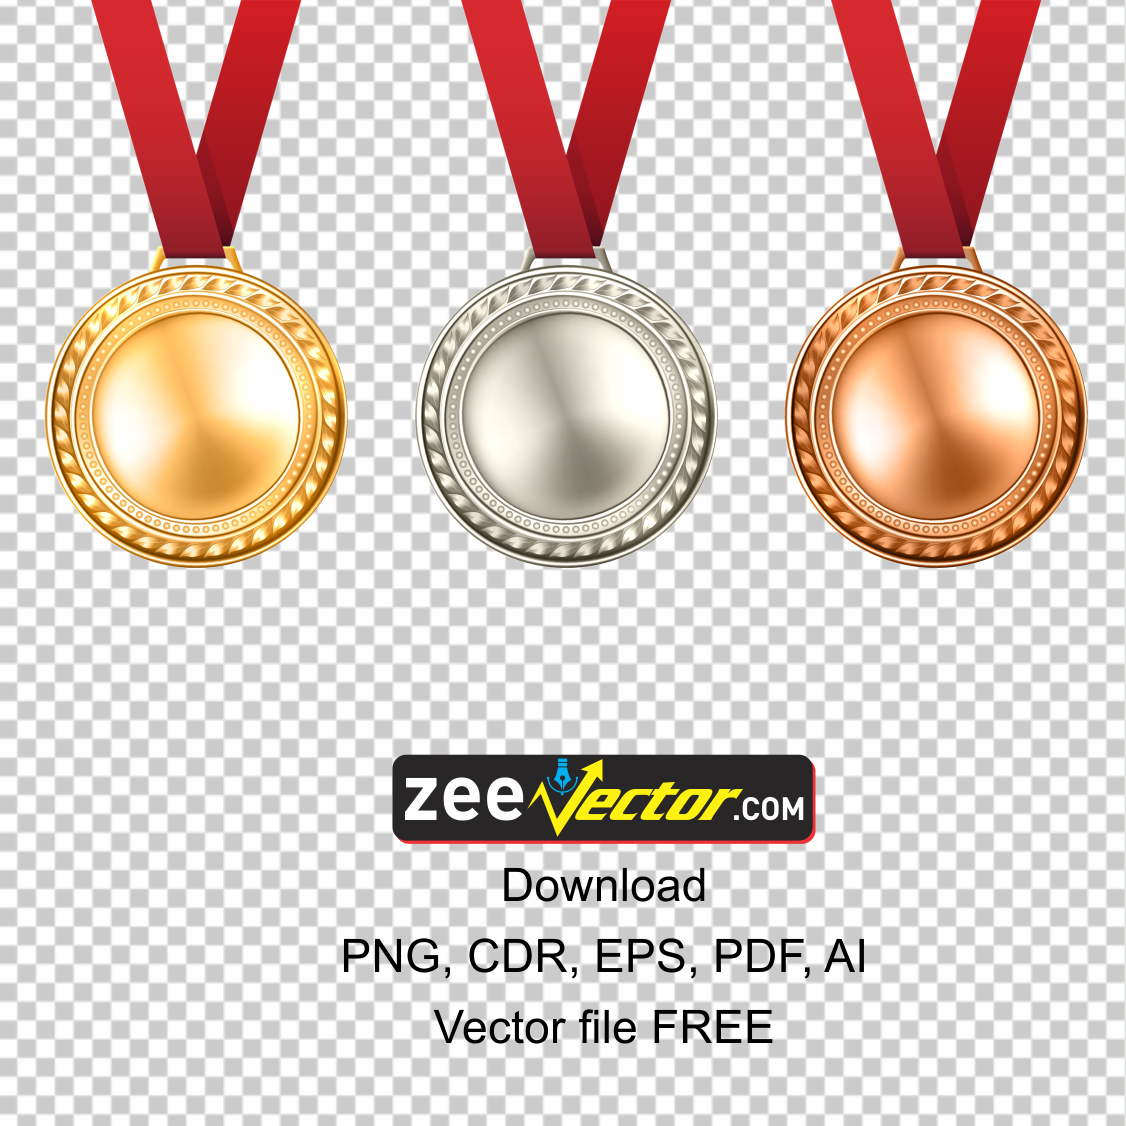 Golden V PNG Transparent Images Free Download, Vector Files